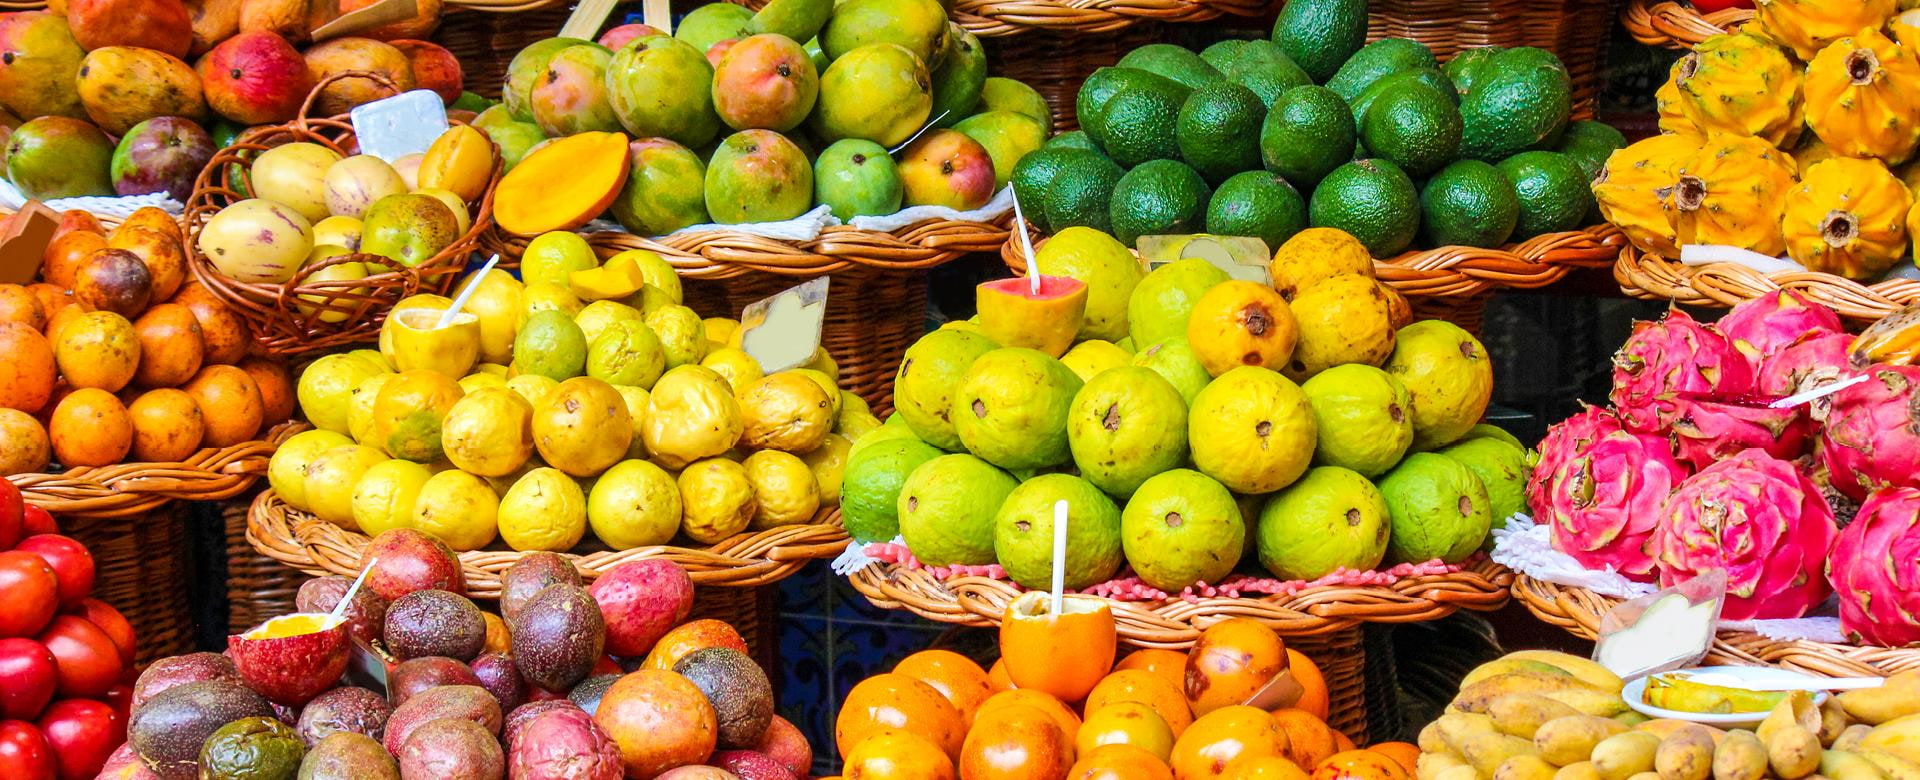 Obst und Gemüse Stand auf Madeira